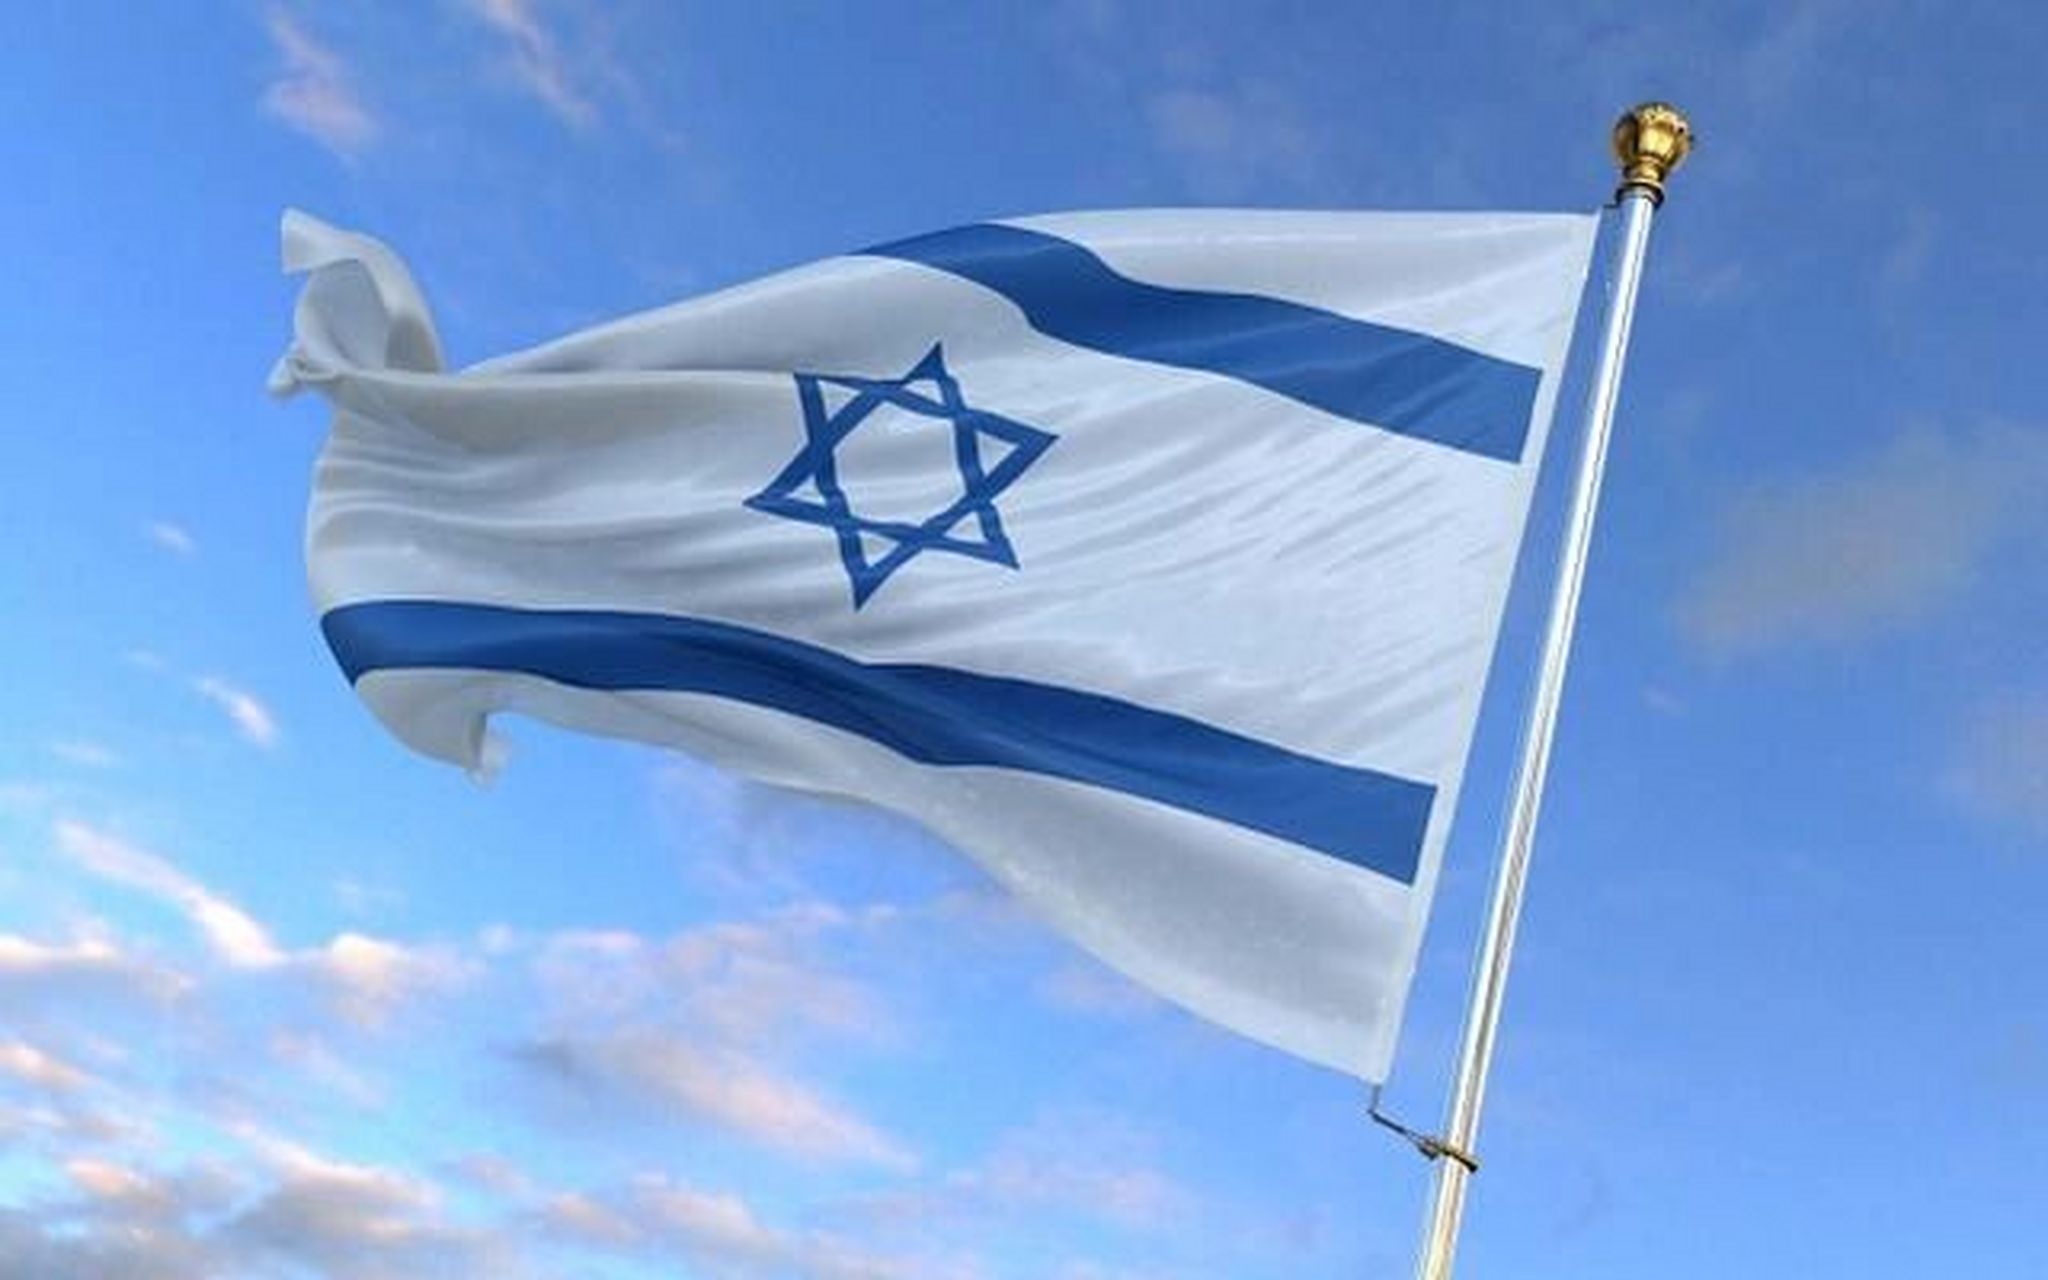 国旗:以色列 中文名:以色列国 希伯来语:060005040108